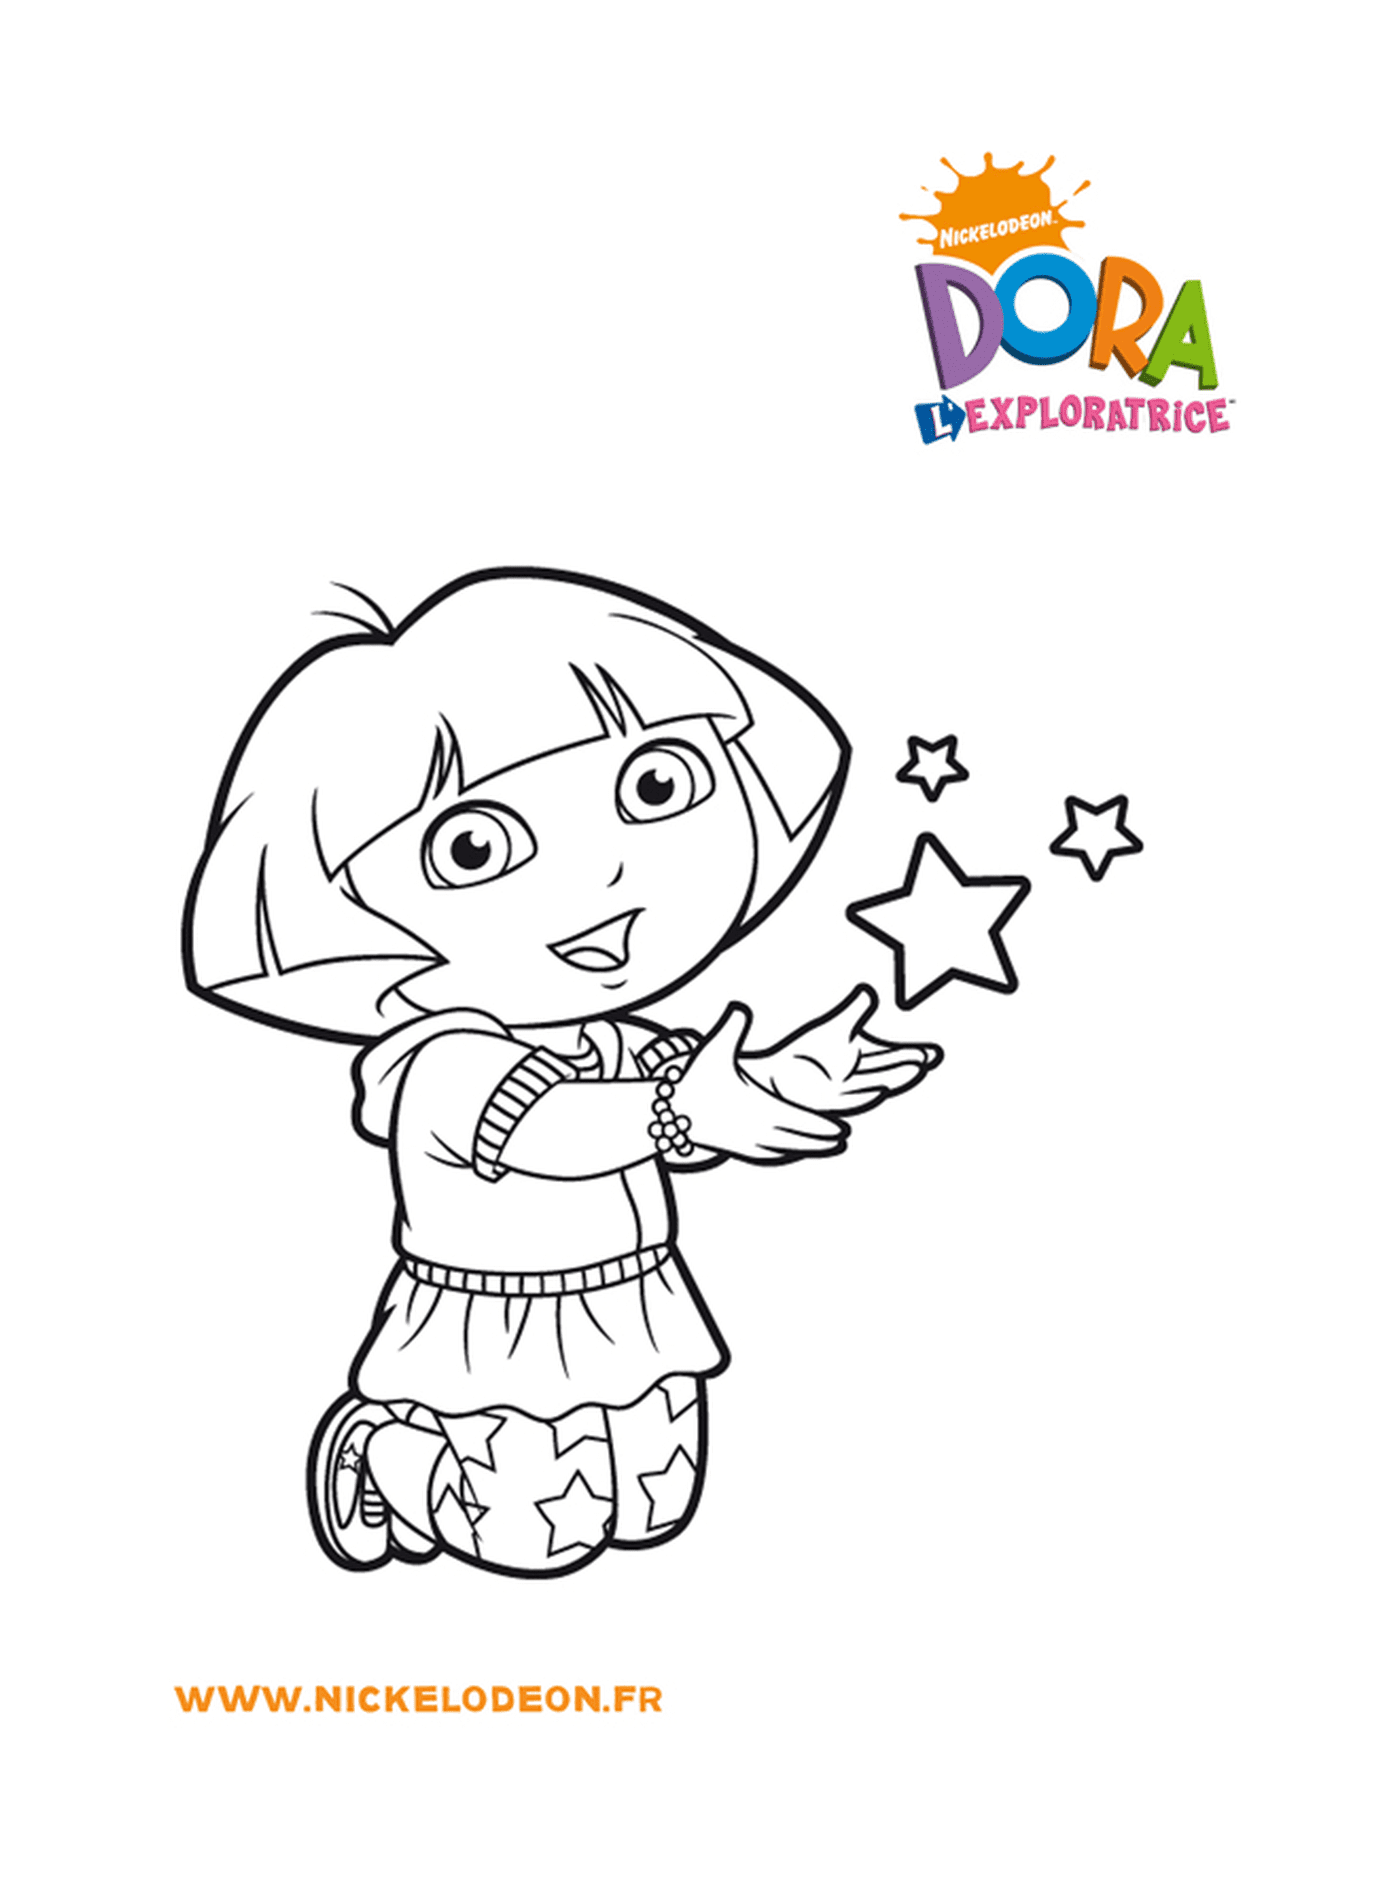  Dora è affascinata dalle stelle 